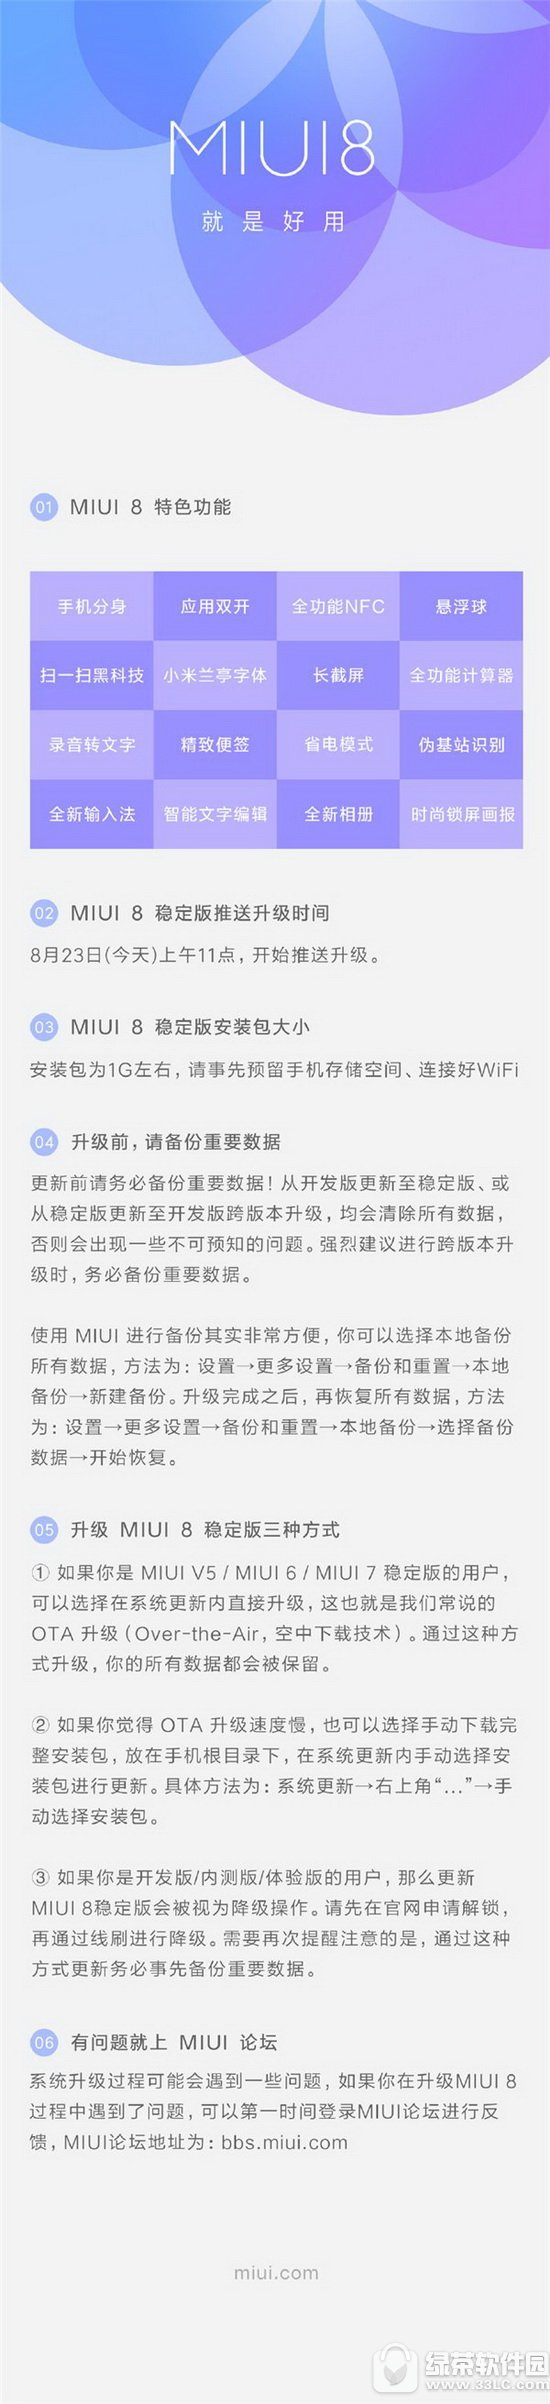 miui8稳定版怎么升级 小米miui8稳定版升级攻略